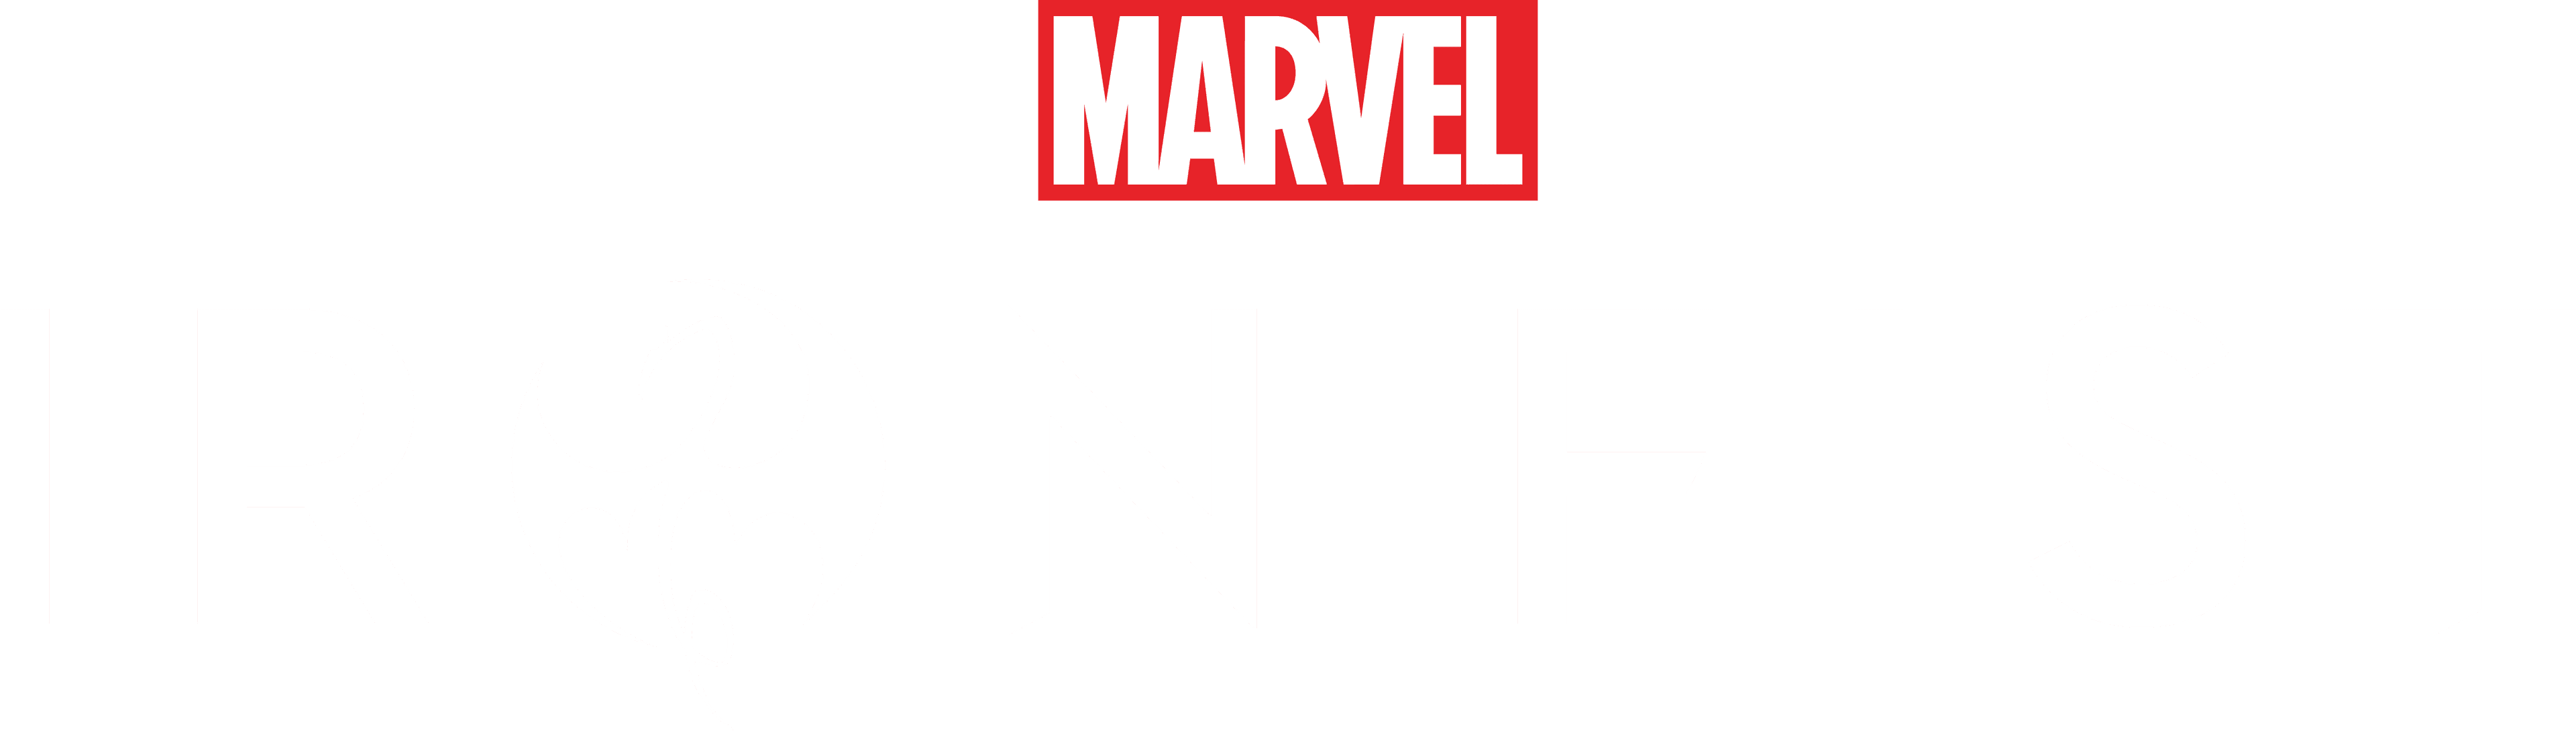 Marvel's Iron Fist logo